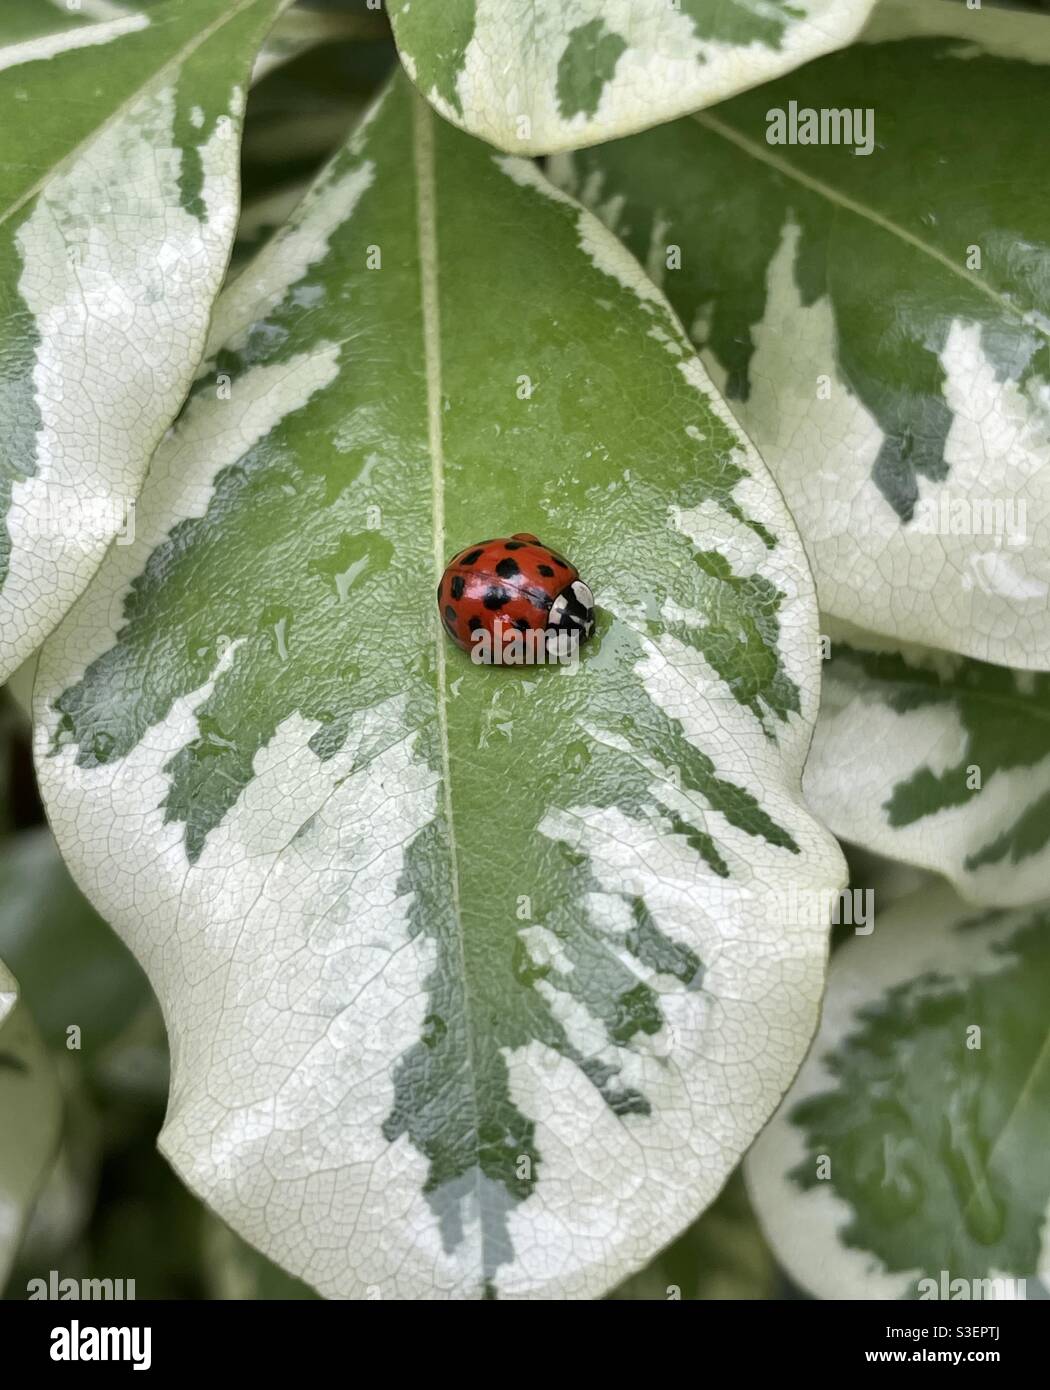 Escarabajo de dama asiática roja y negra en hoja estampada Foto de stock